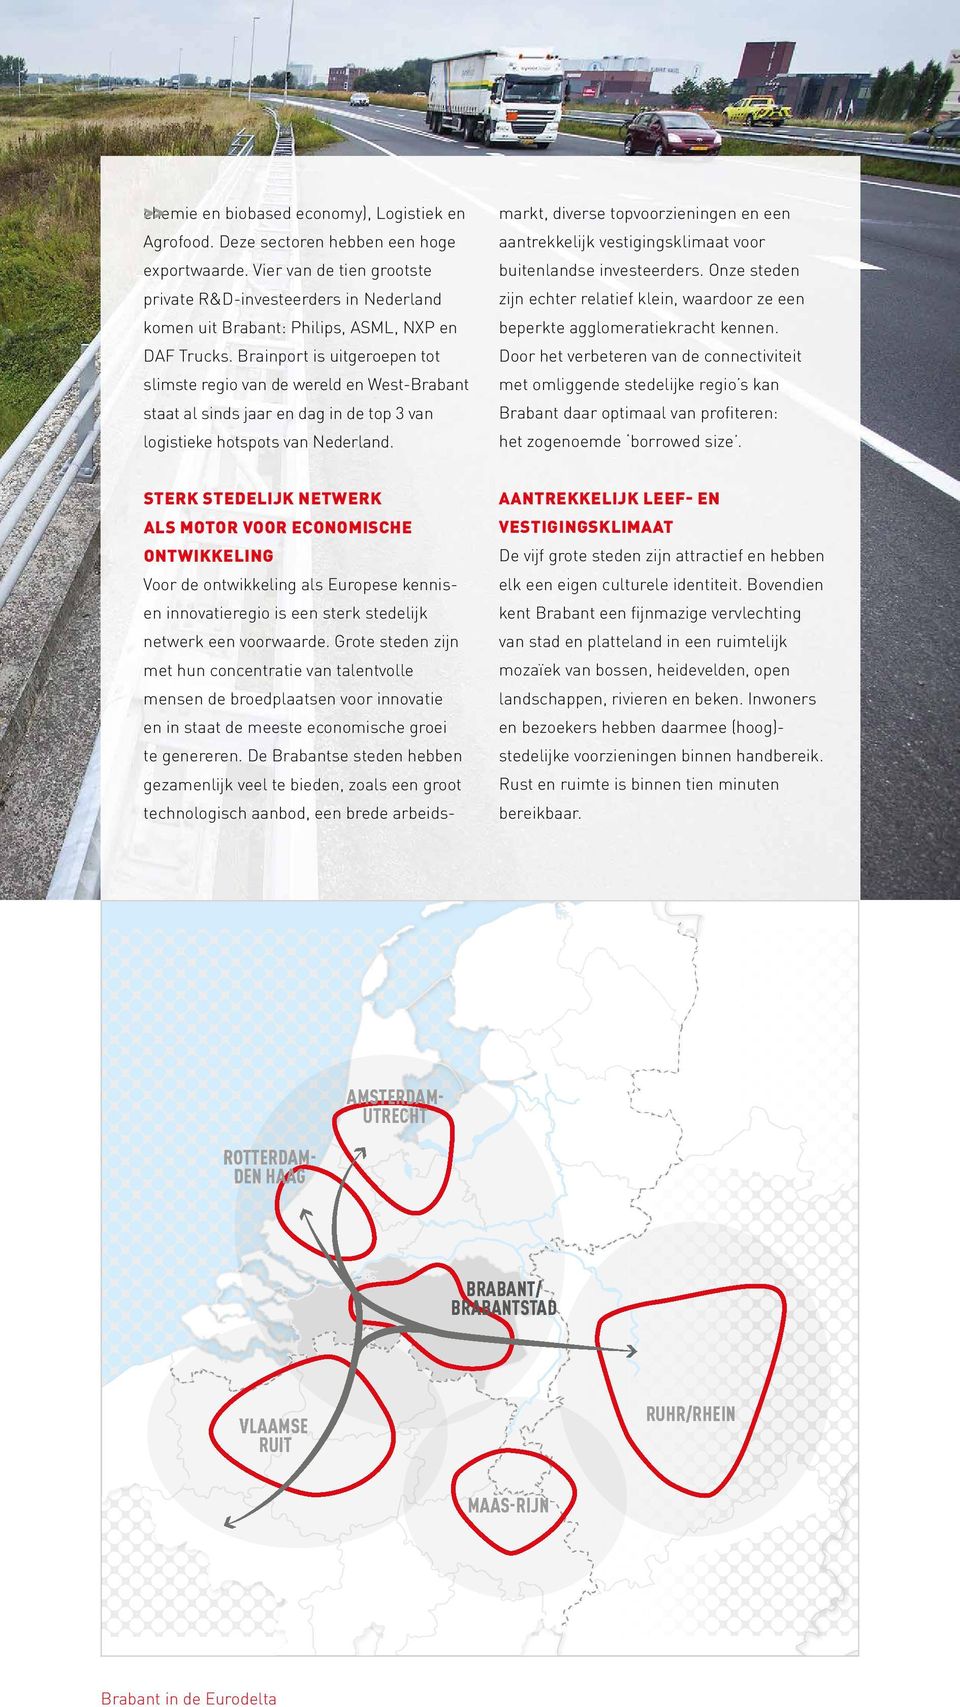 Onze steden private R&D-investeerders in Nederland zijn echter relatief klein, waardoor ze een komen uit Brabant: Philips, ASML, NXP en beperkte agglomeratiekracht kennen. DAF Trucks.